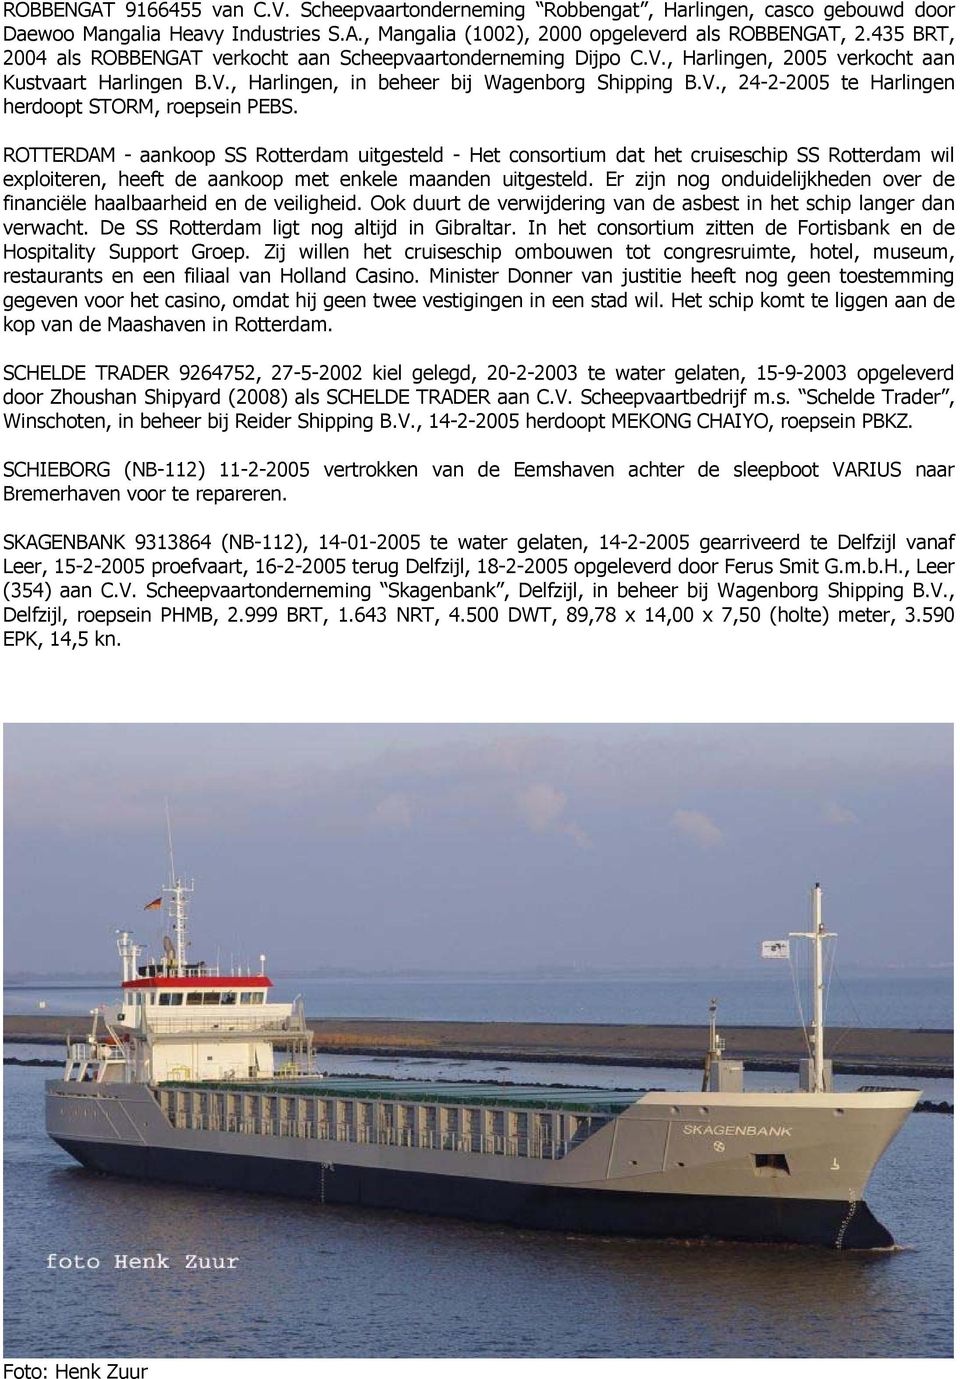 ROTTERDAM - aankoop SS Rotterdam uitgesteld - Het consortium dat het cruiseschip SS Rotterdam wil exploiteren, heeft de aankoop met enkele maanden uitgesteld.